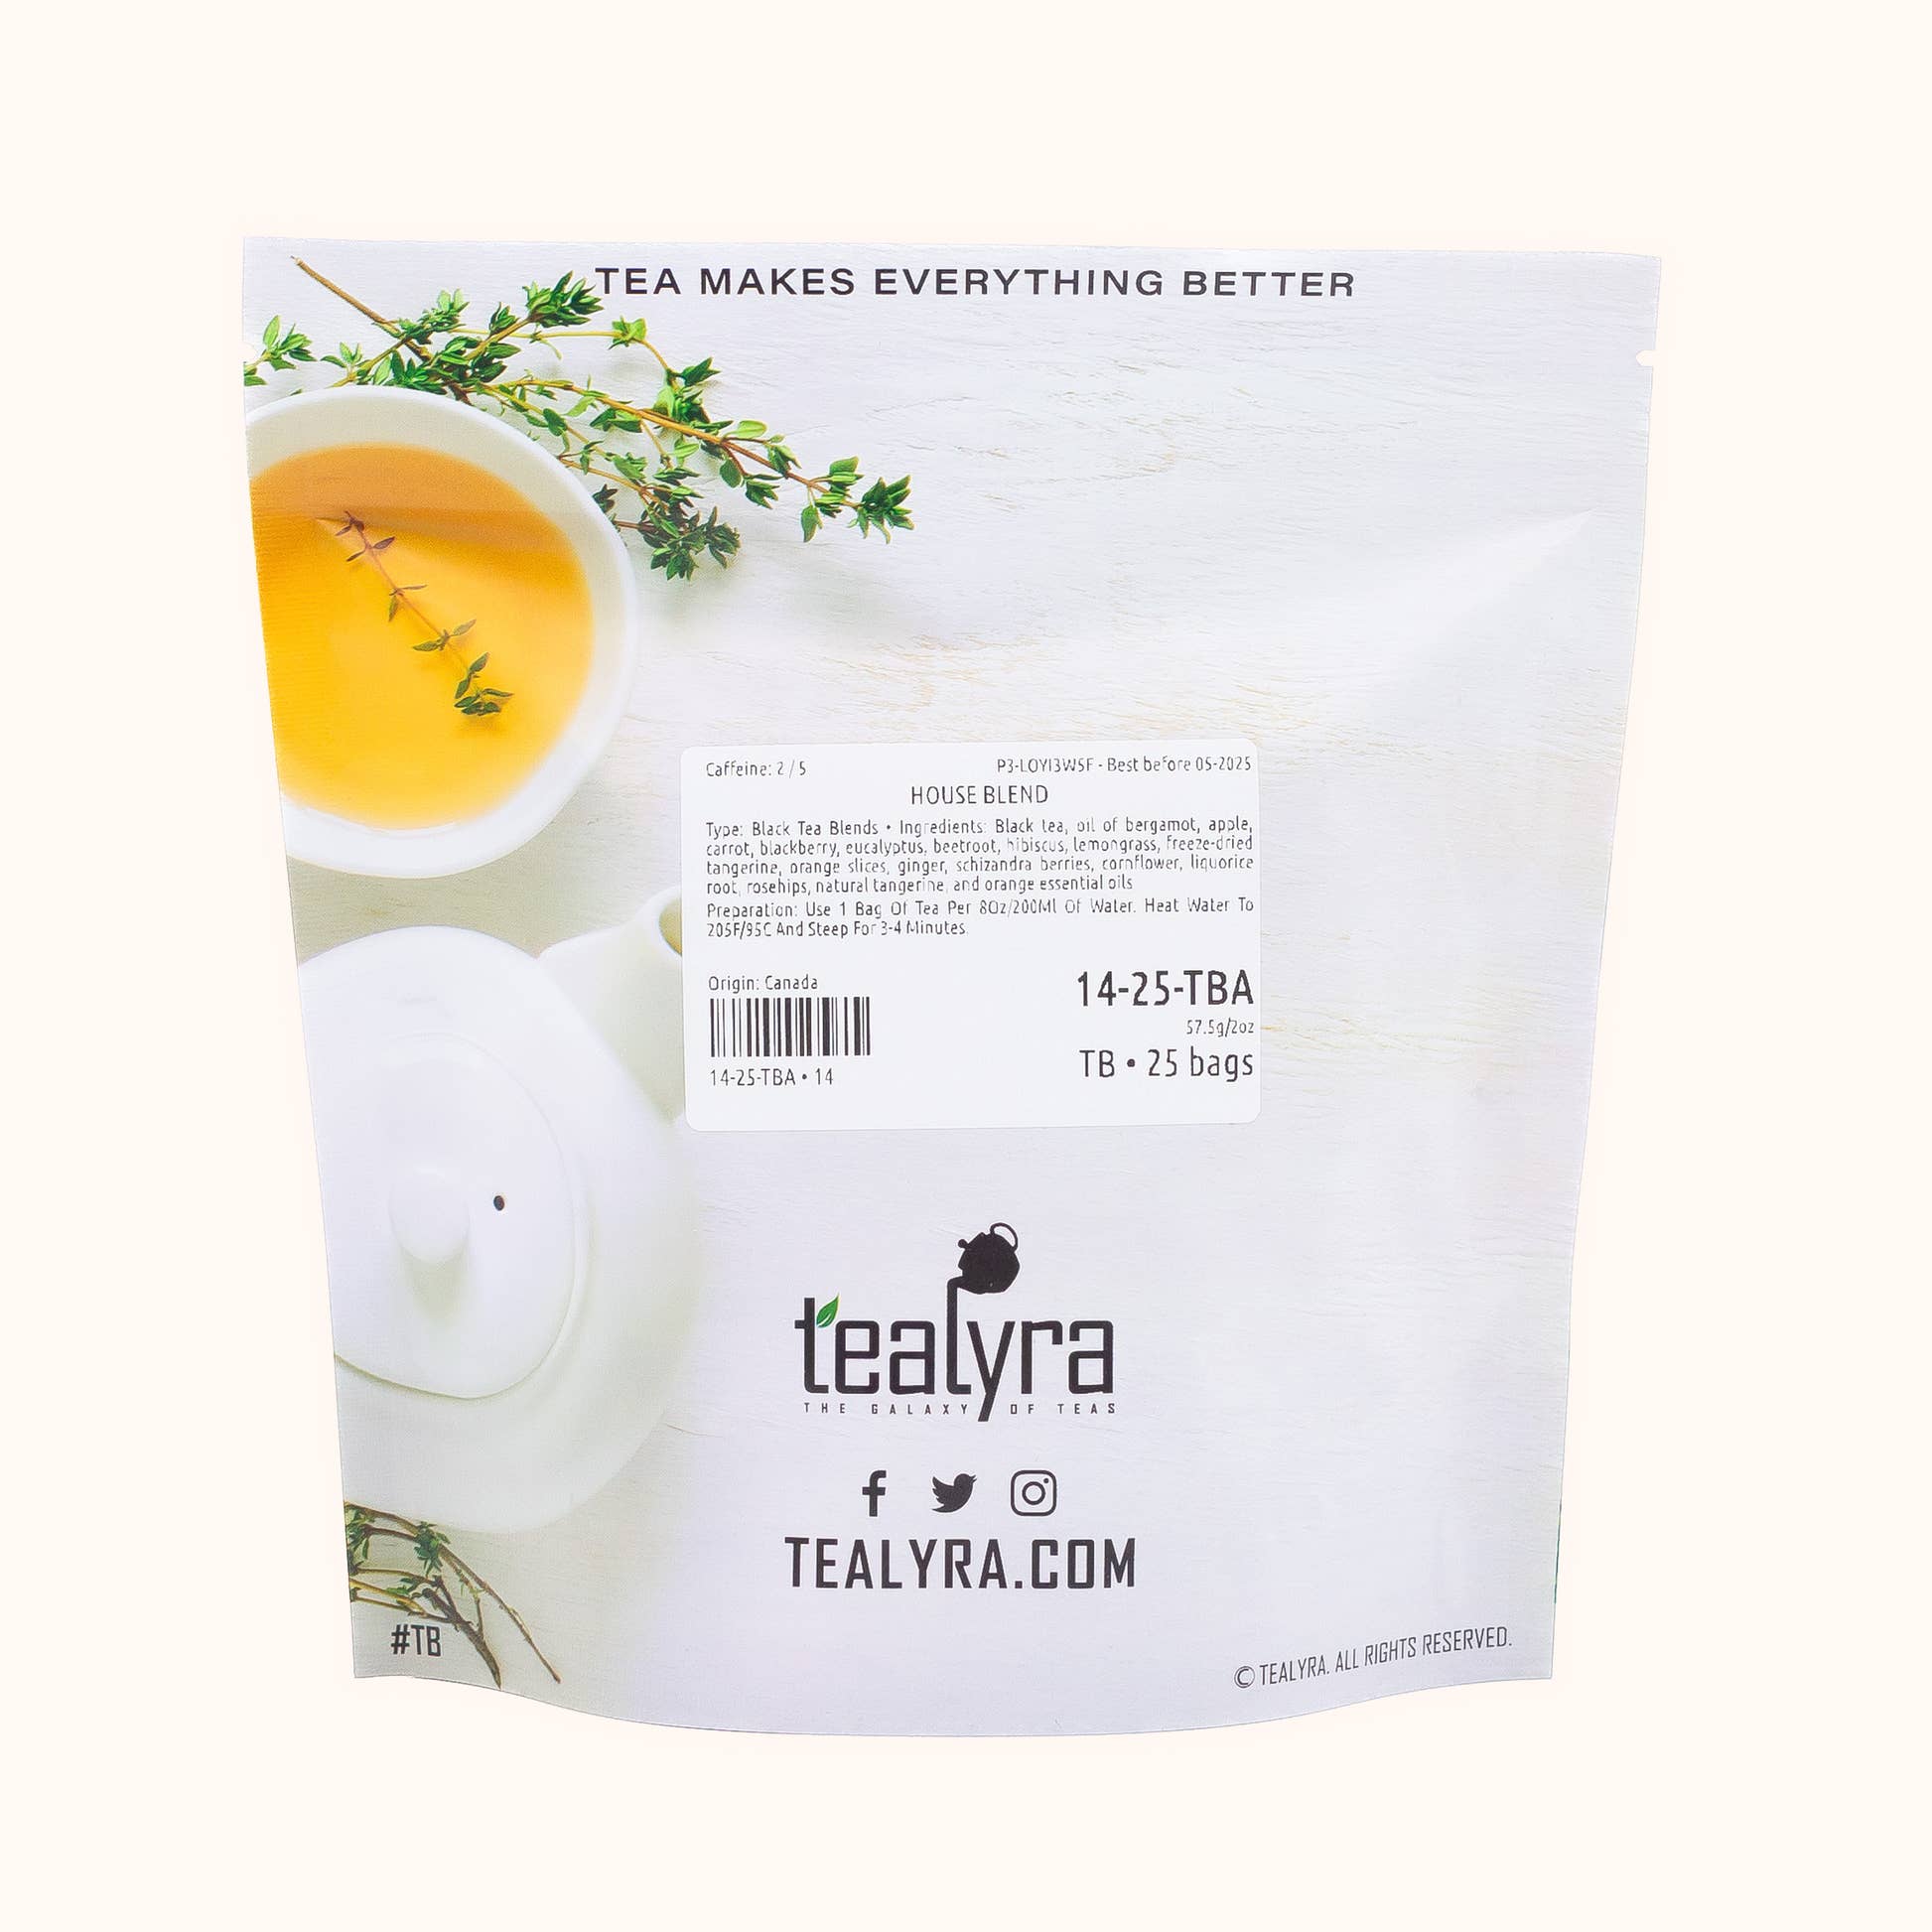 Tealyra's House Blend tea sachet pouch